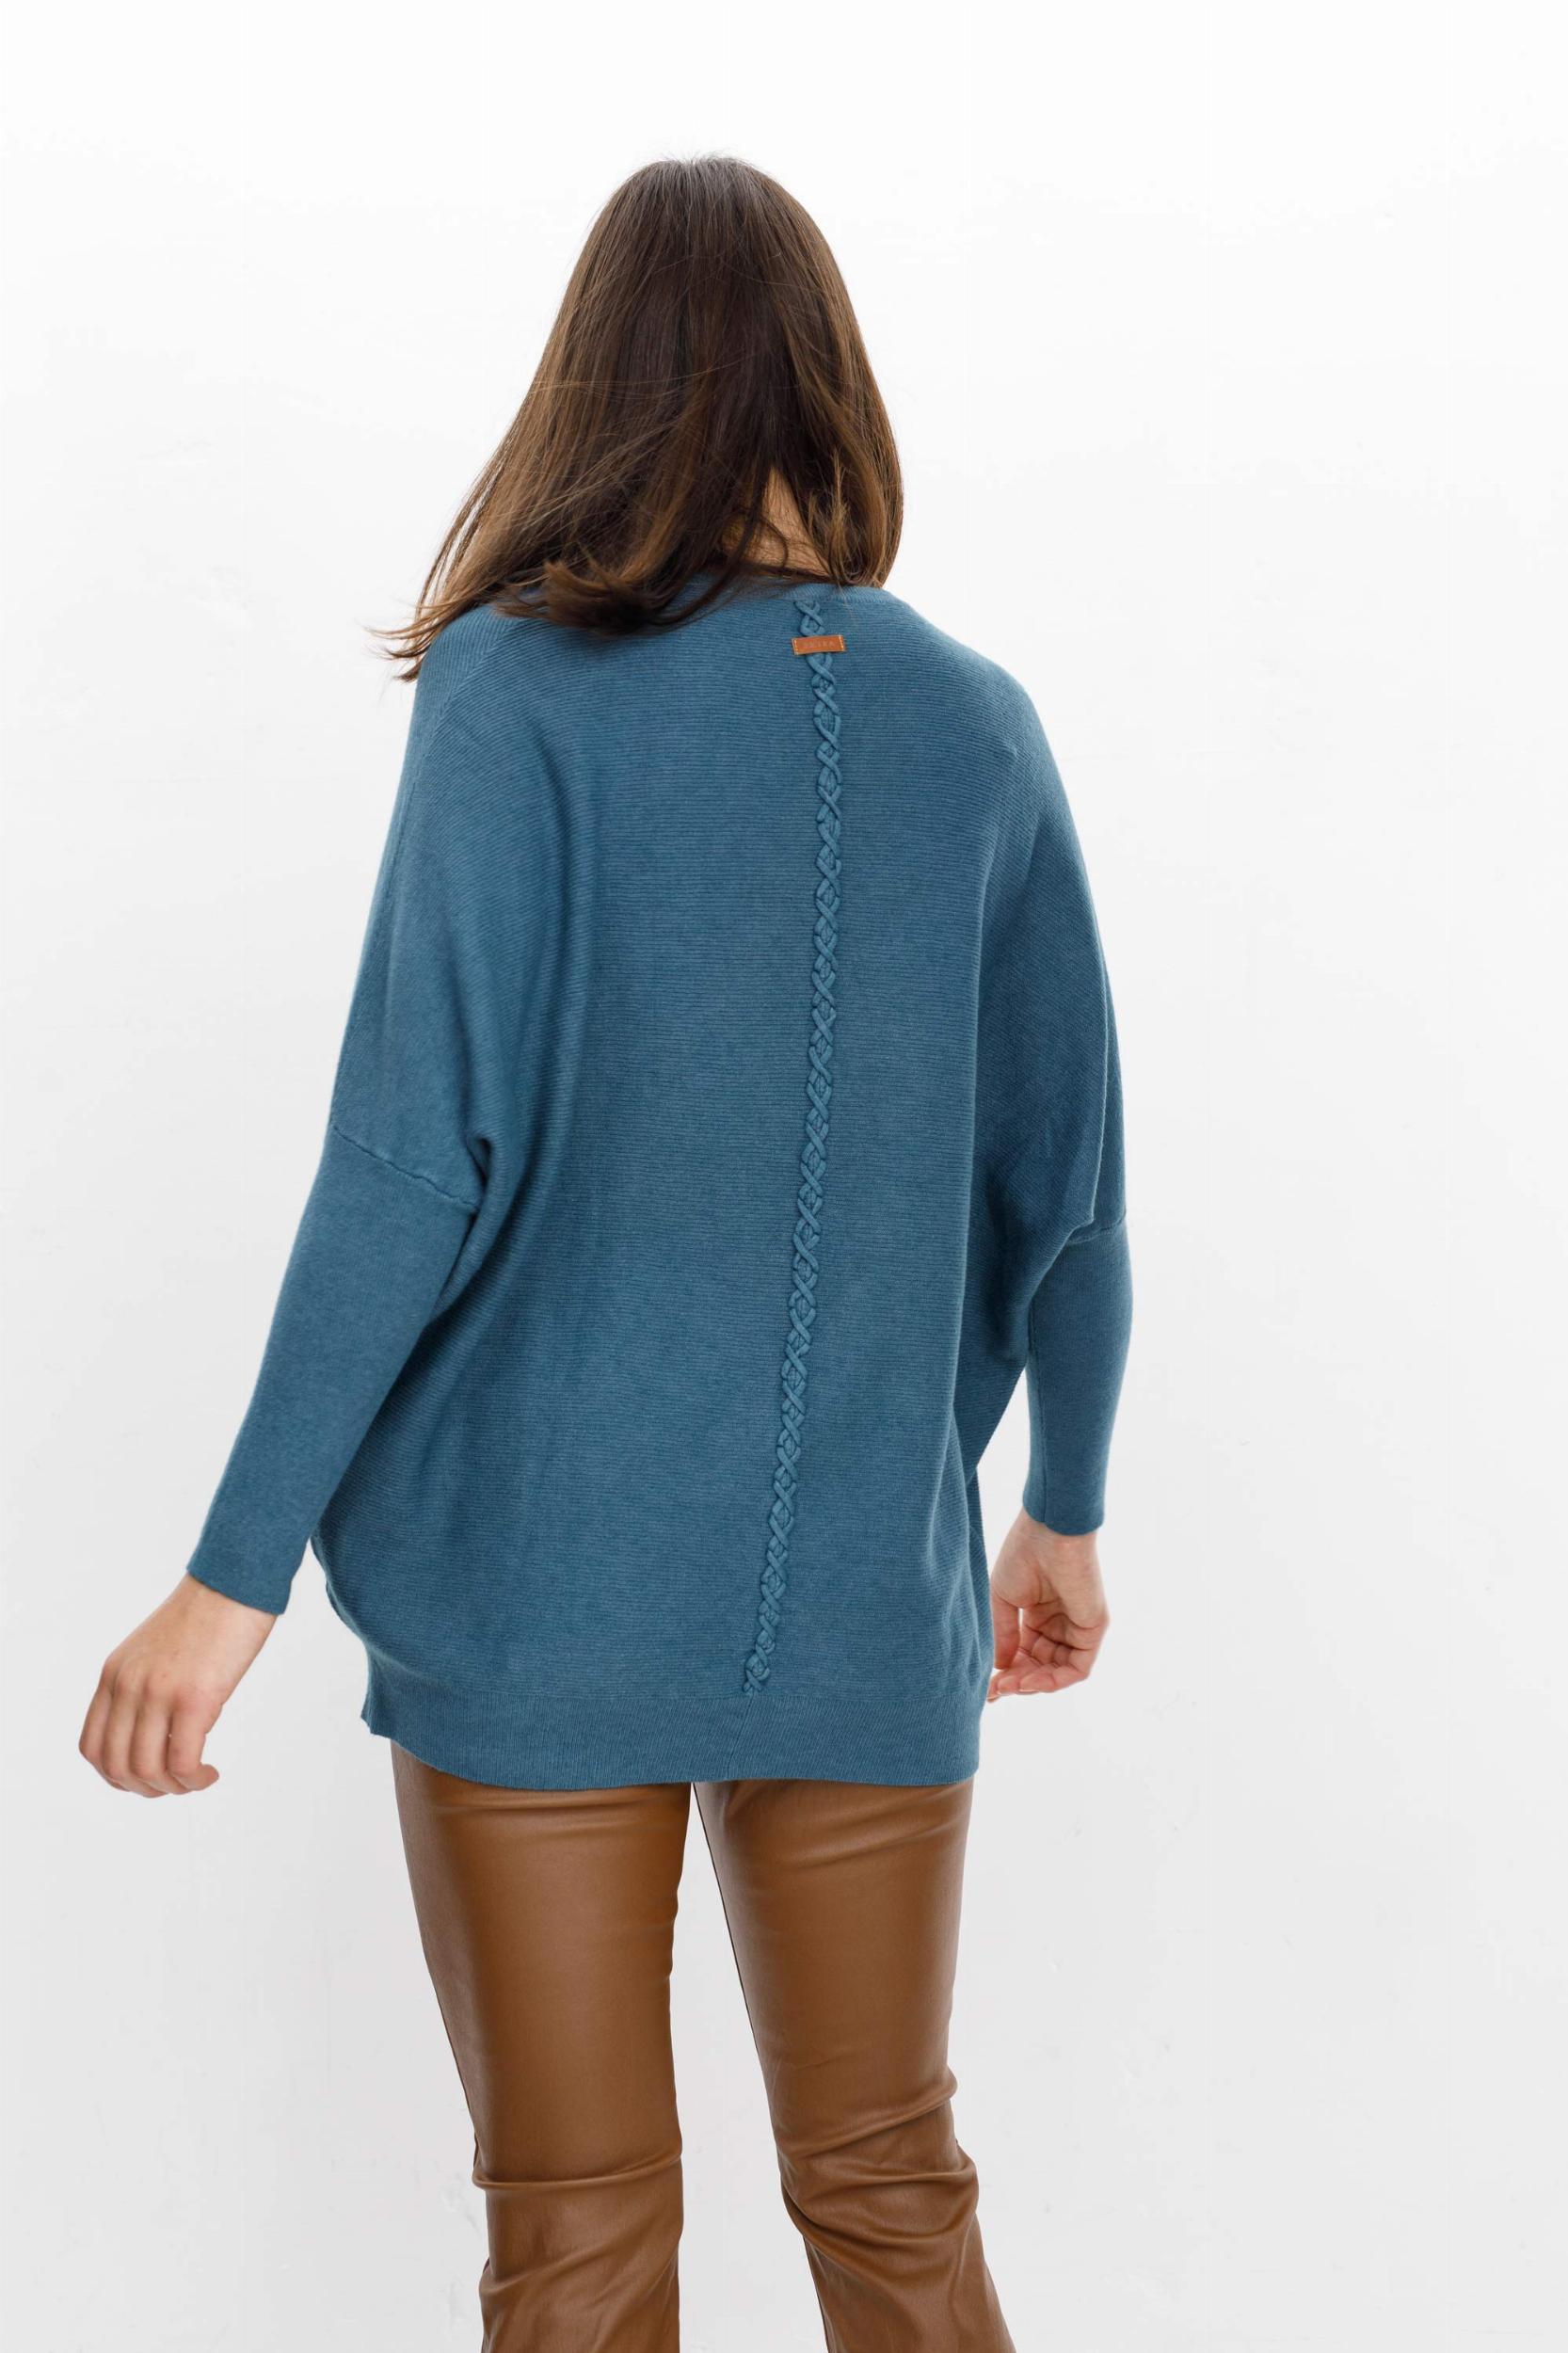 Sweater Narcizo azul piedra talle unico